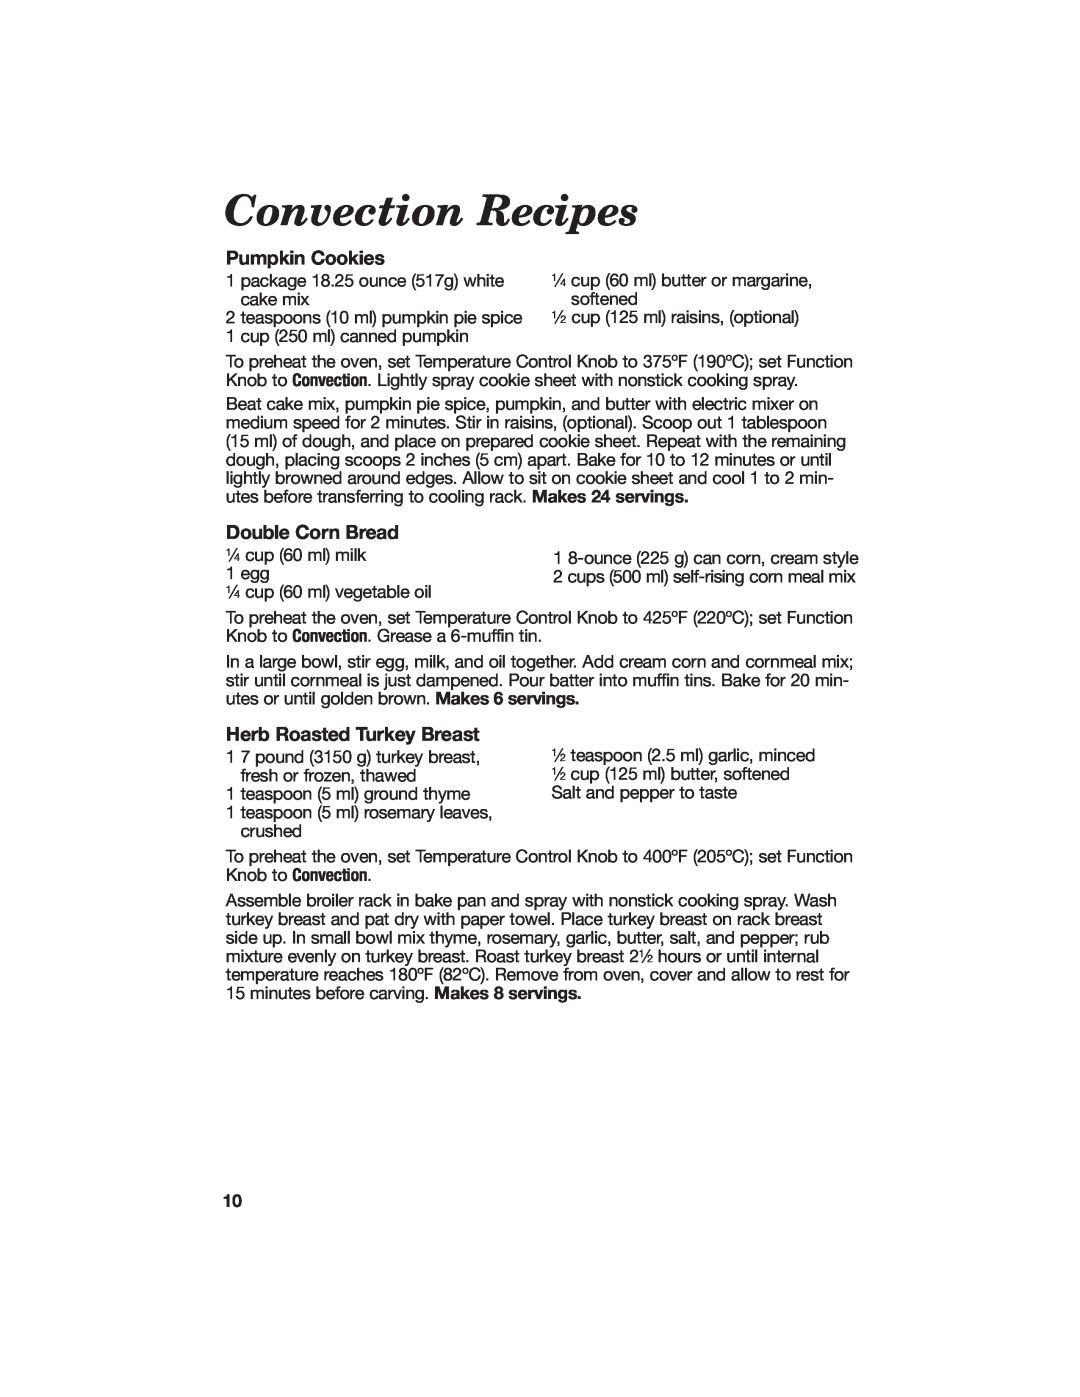 Hamilton Beach Countertop Oven with Convection manual Convection Recipes, Pumpkin Cookies, Double Corn Bread 